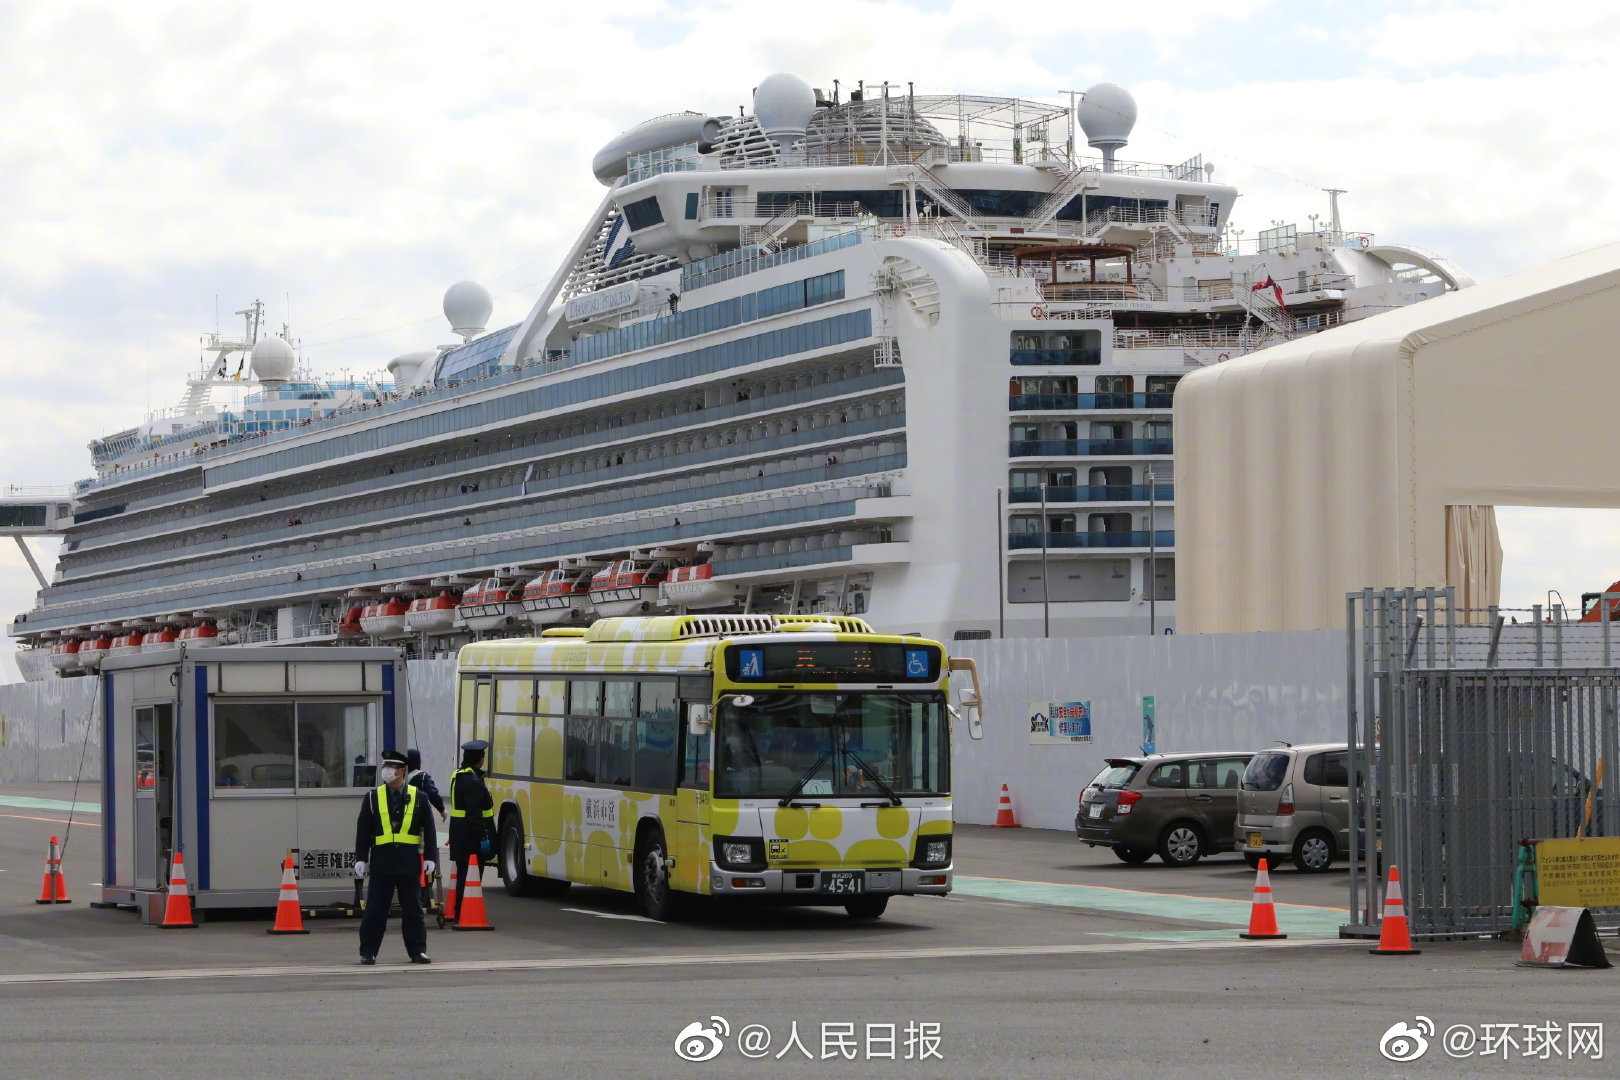 据日本厚生劳动省消息,截至18号,总共对钻石公主号 上2404名乘客和